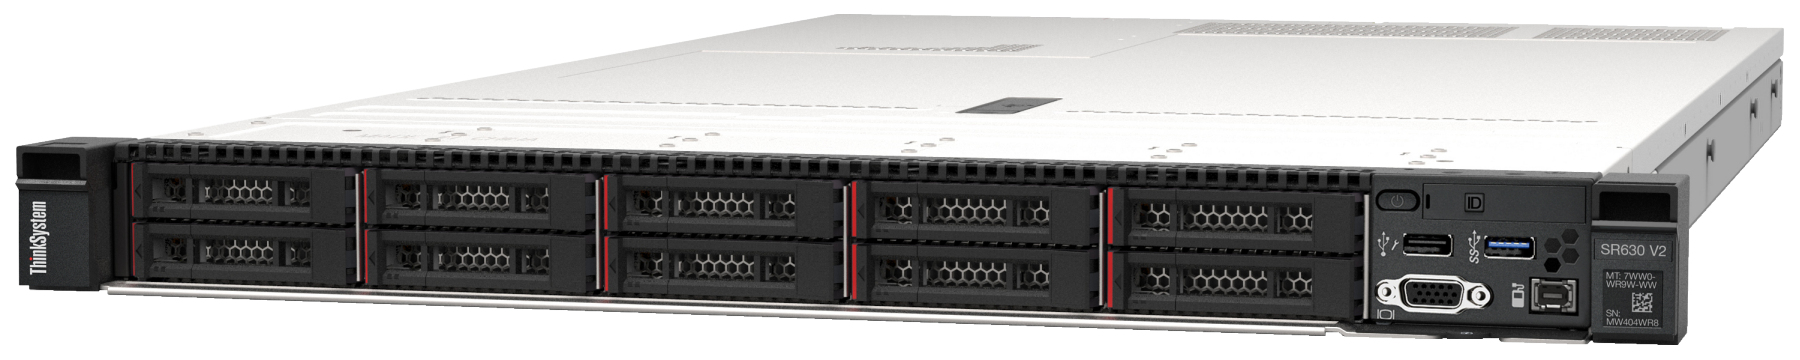 Сервер Lenovo ThinkSystem SR630 V2 (7Z71A05AEA). Фиксированная комплектация сервера